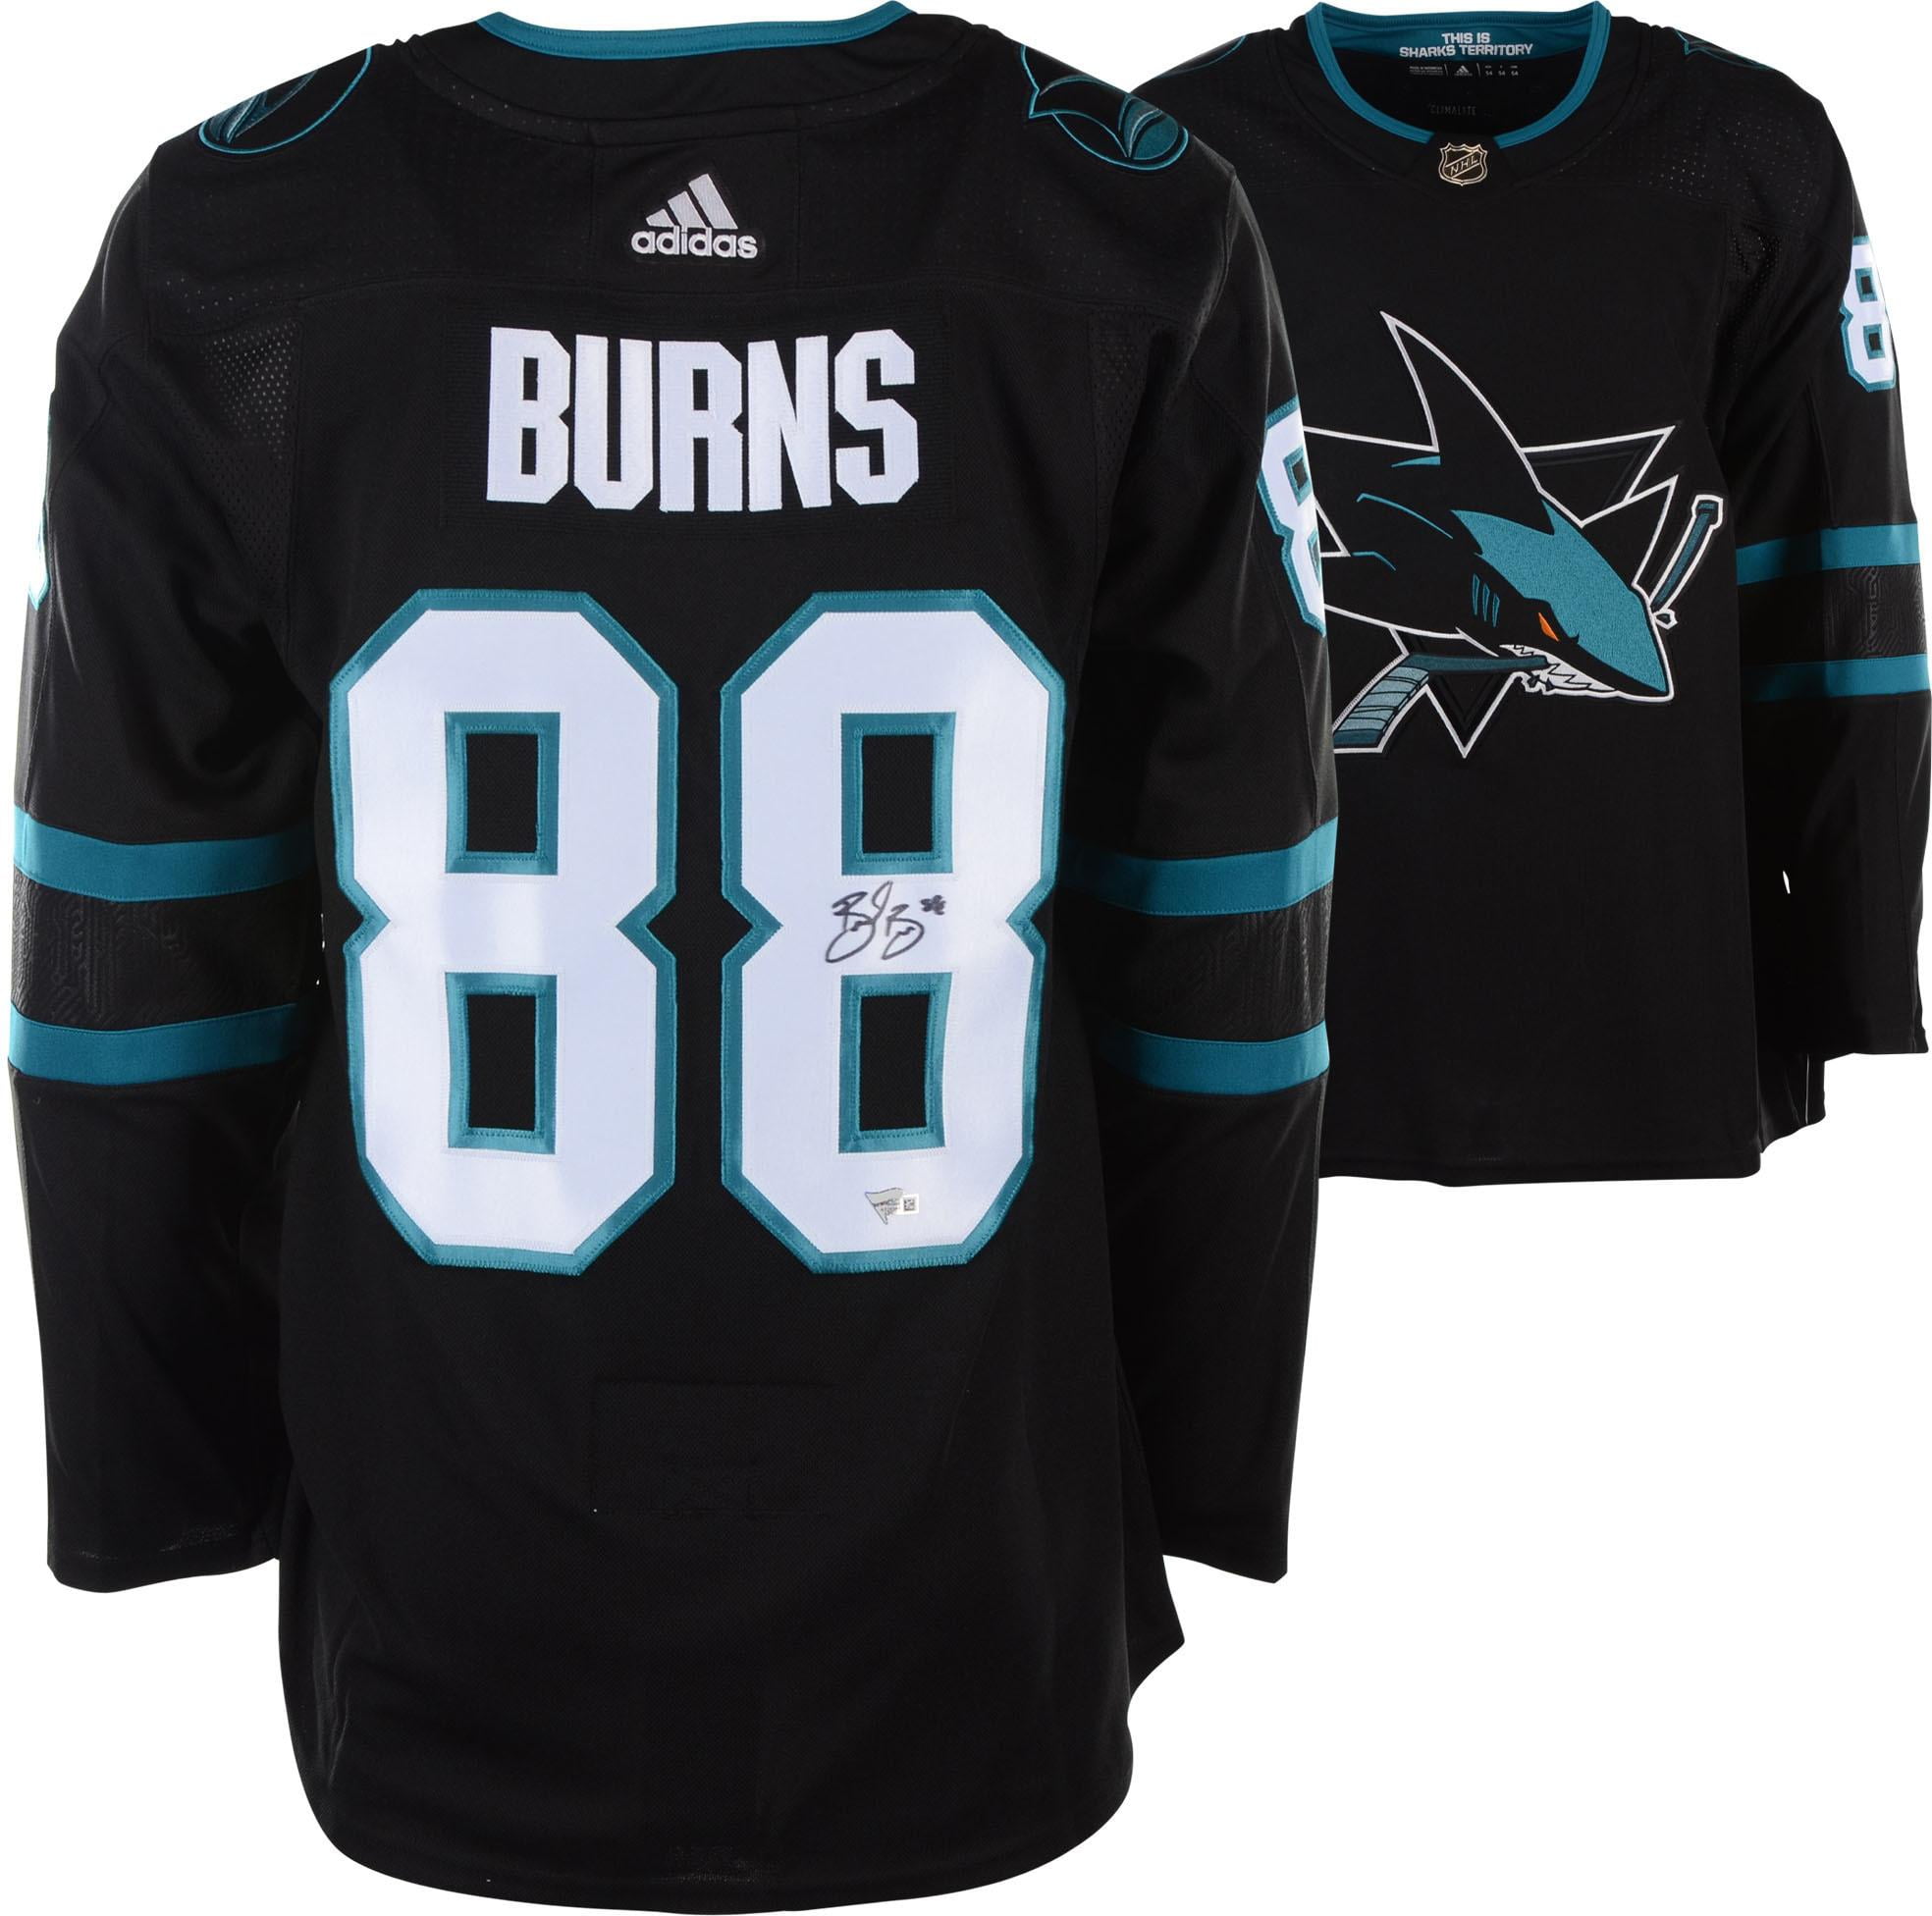 burns sharks jersey